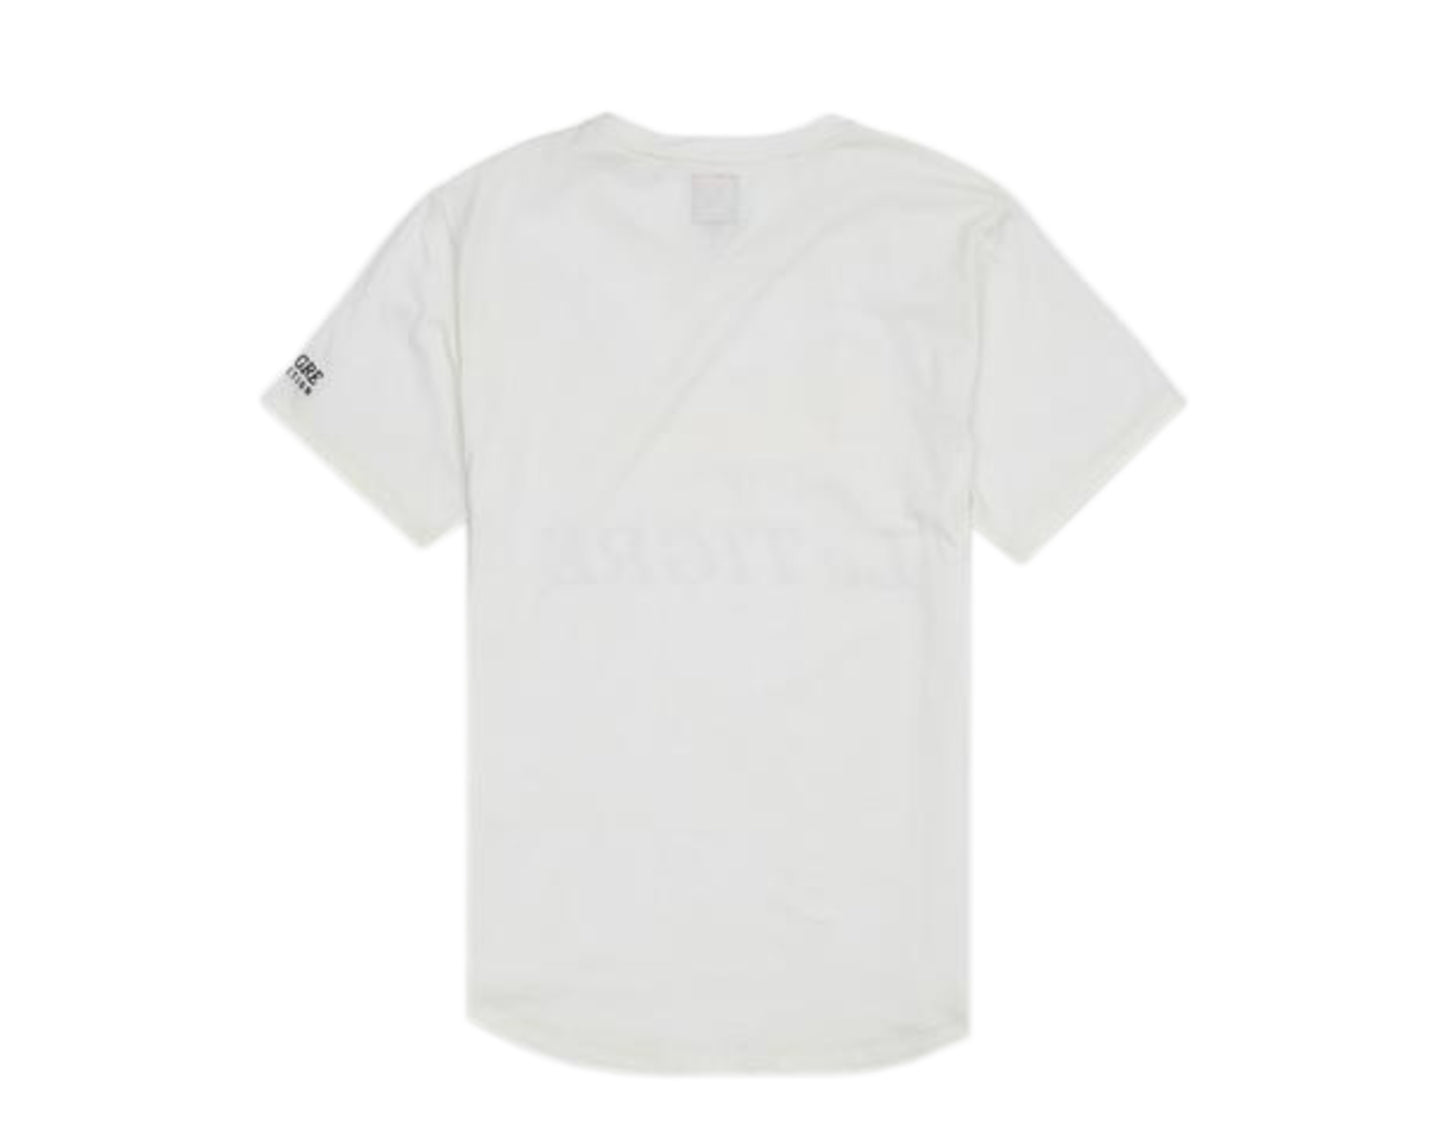 Le Tigre Classic Logo White Men's T-Shirt LT449-WHT